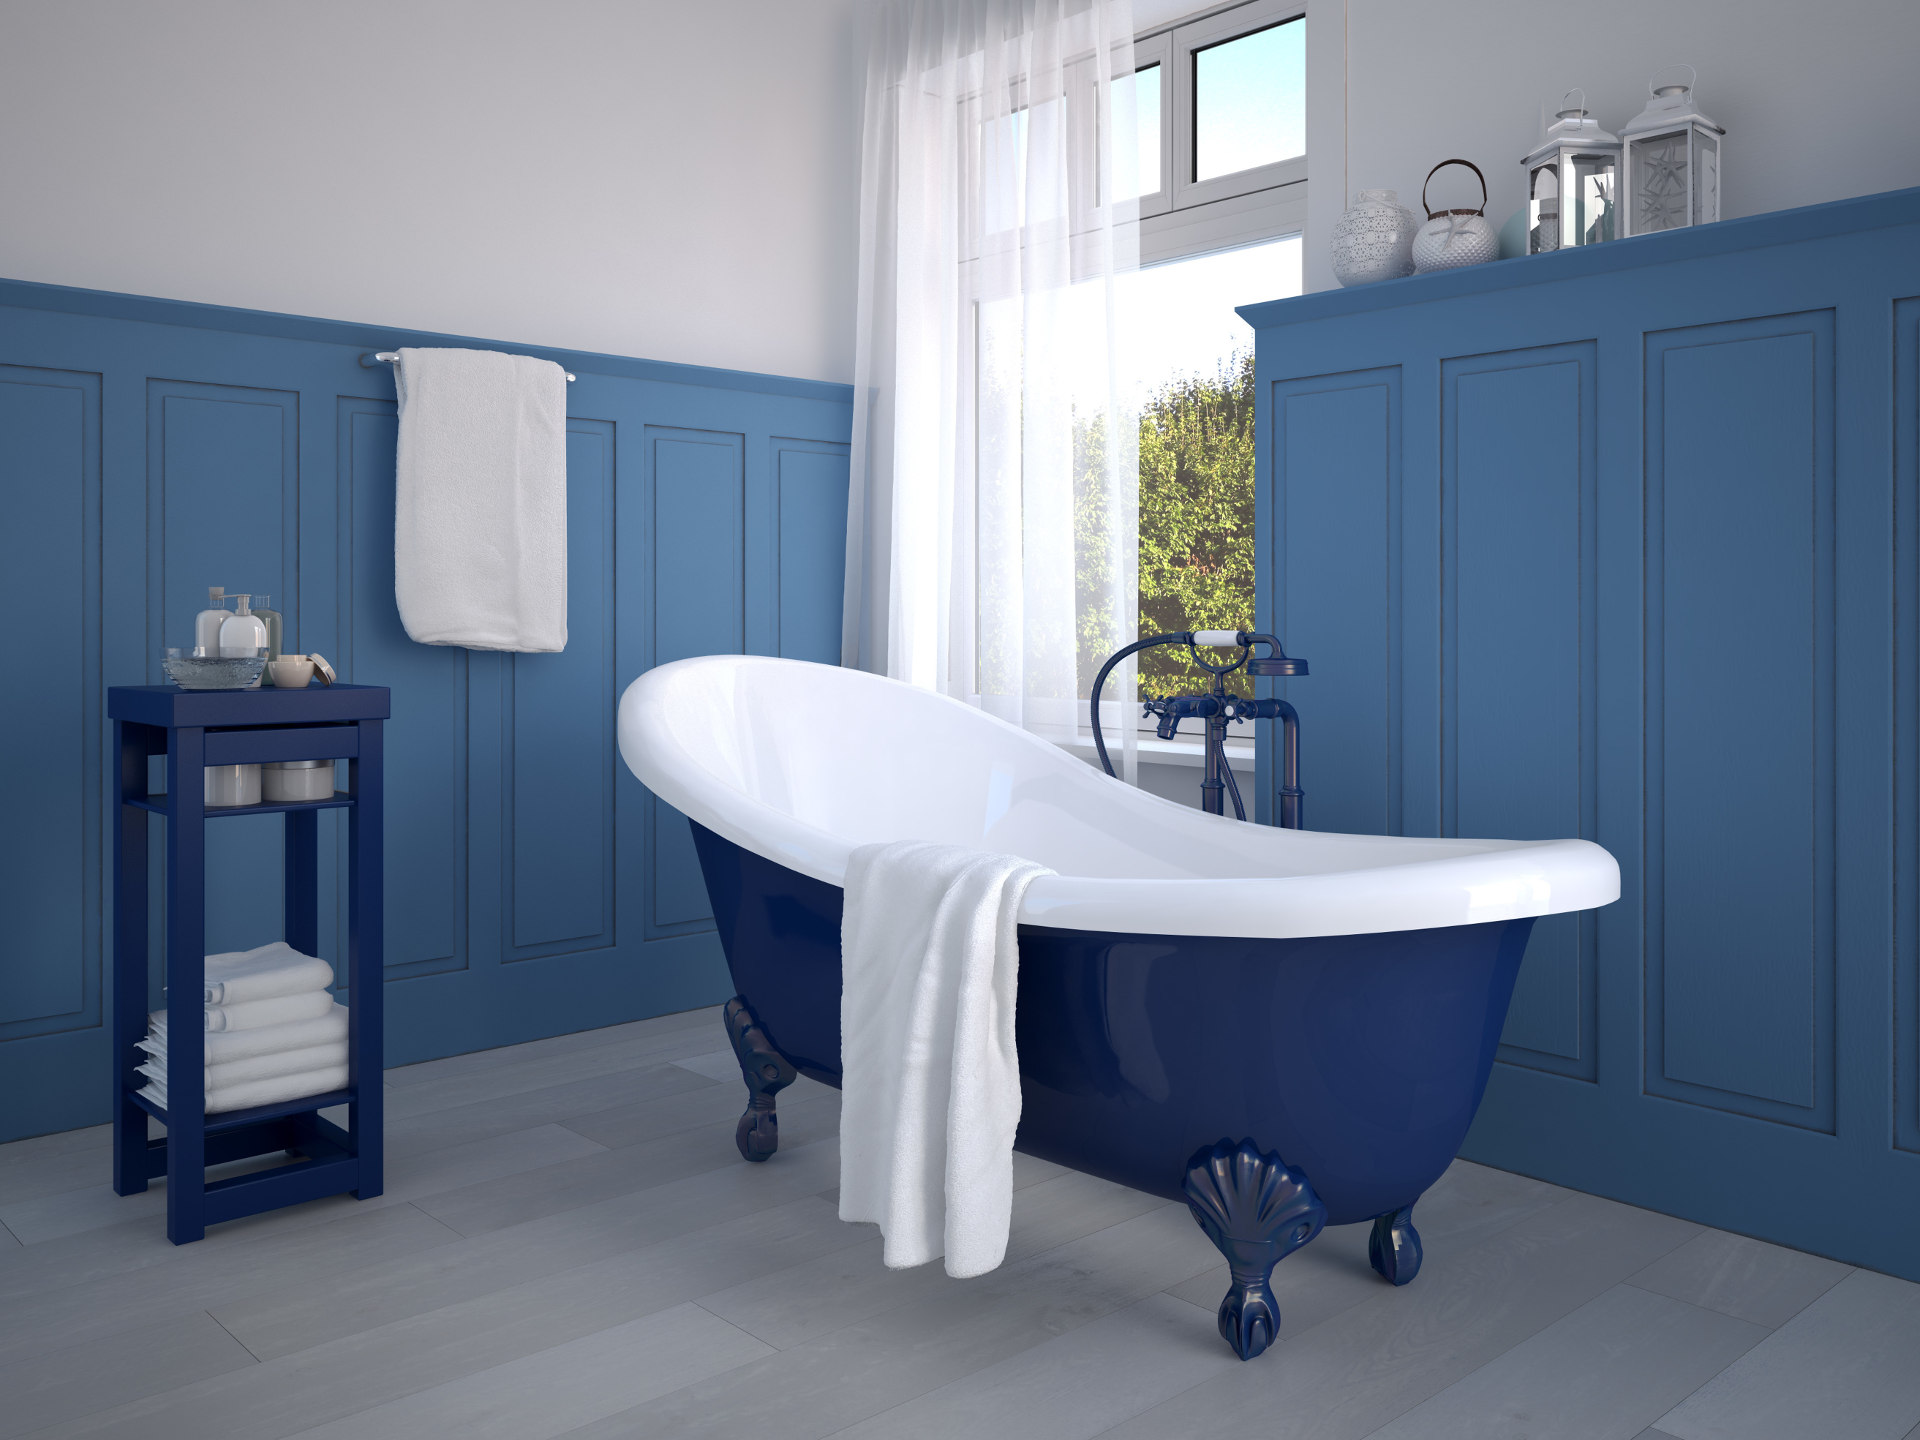 Niebieski w mieszkaniu, stylowa wanna wolnostojąca, niebieska sztukateria, drewniana podłoga, niebieski stolik pomocniczy